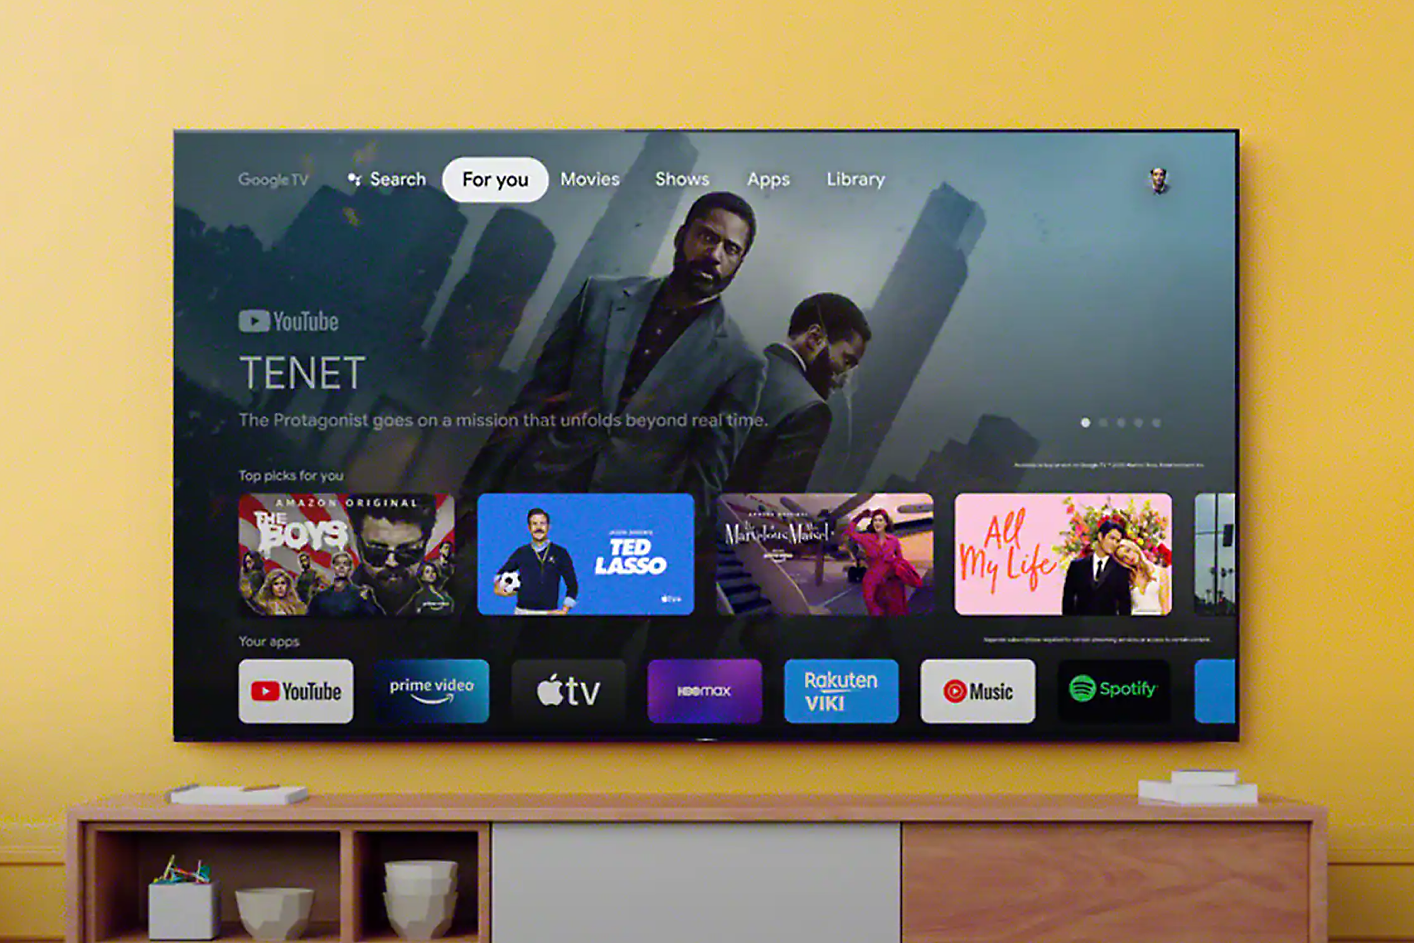 Écran de télévision affichant une interface dotée d'une barre de recherche et d'applications, avec une scène du film « Tenet » en arrière-plan.